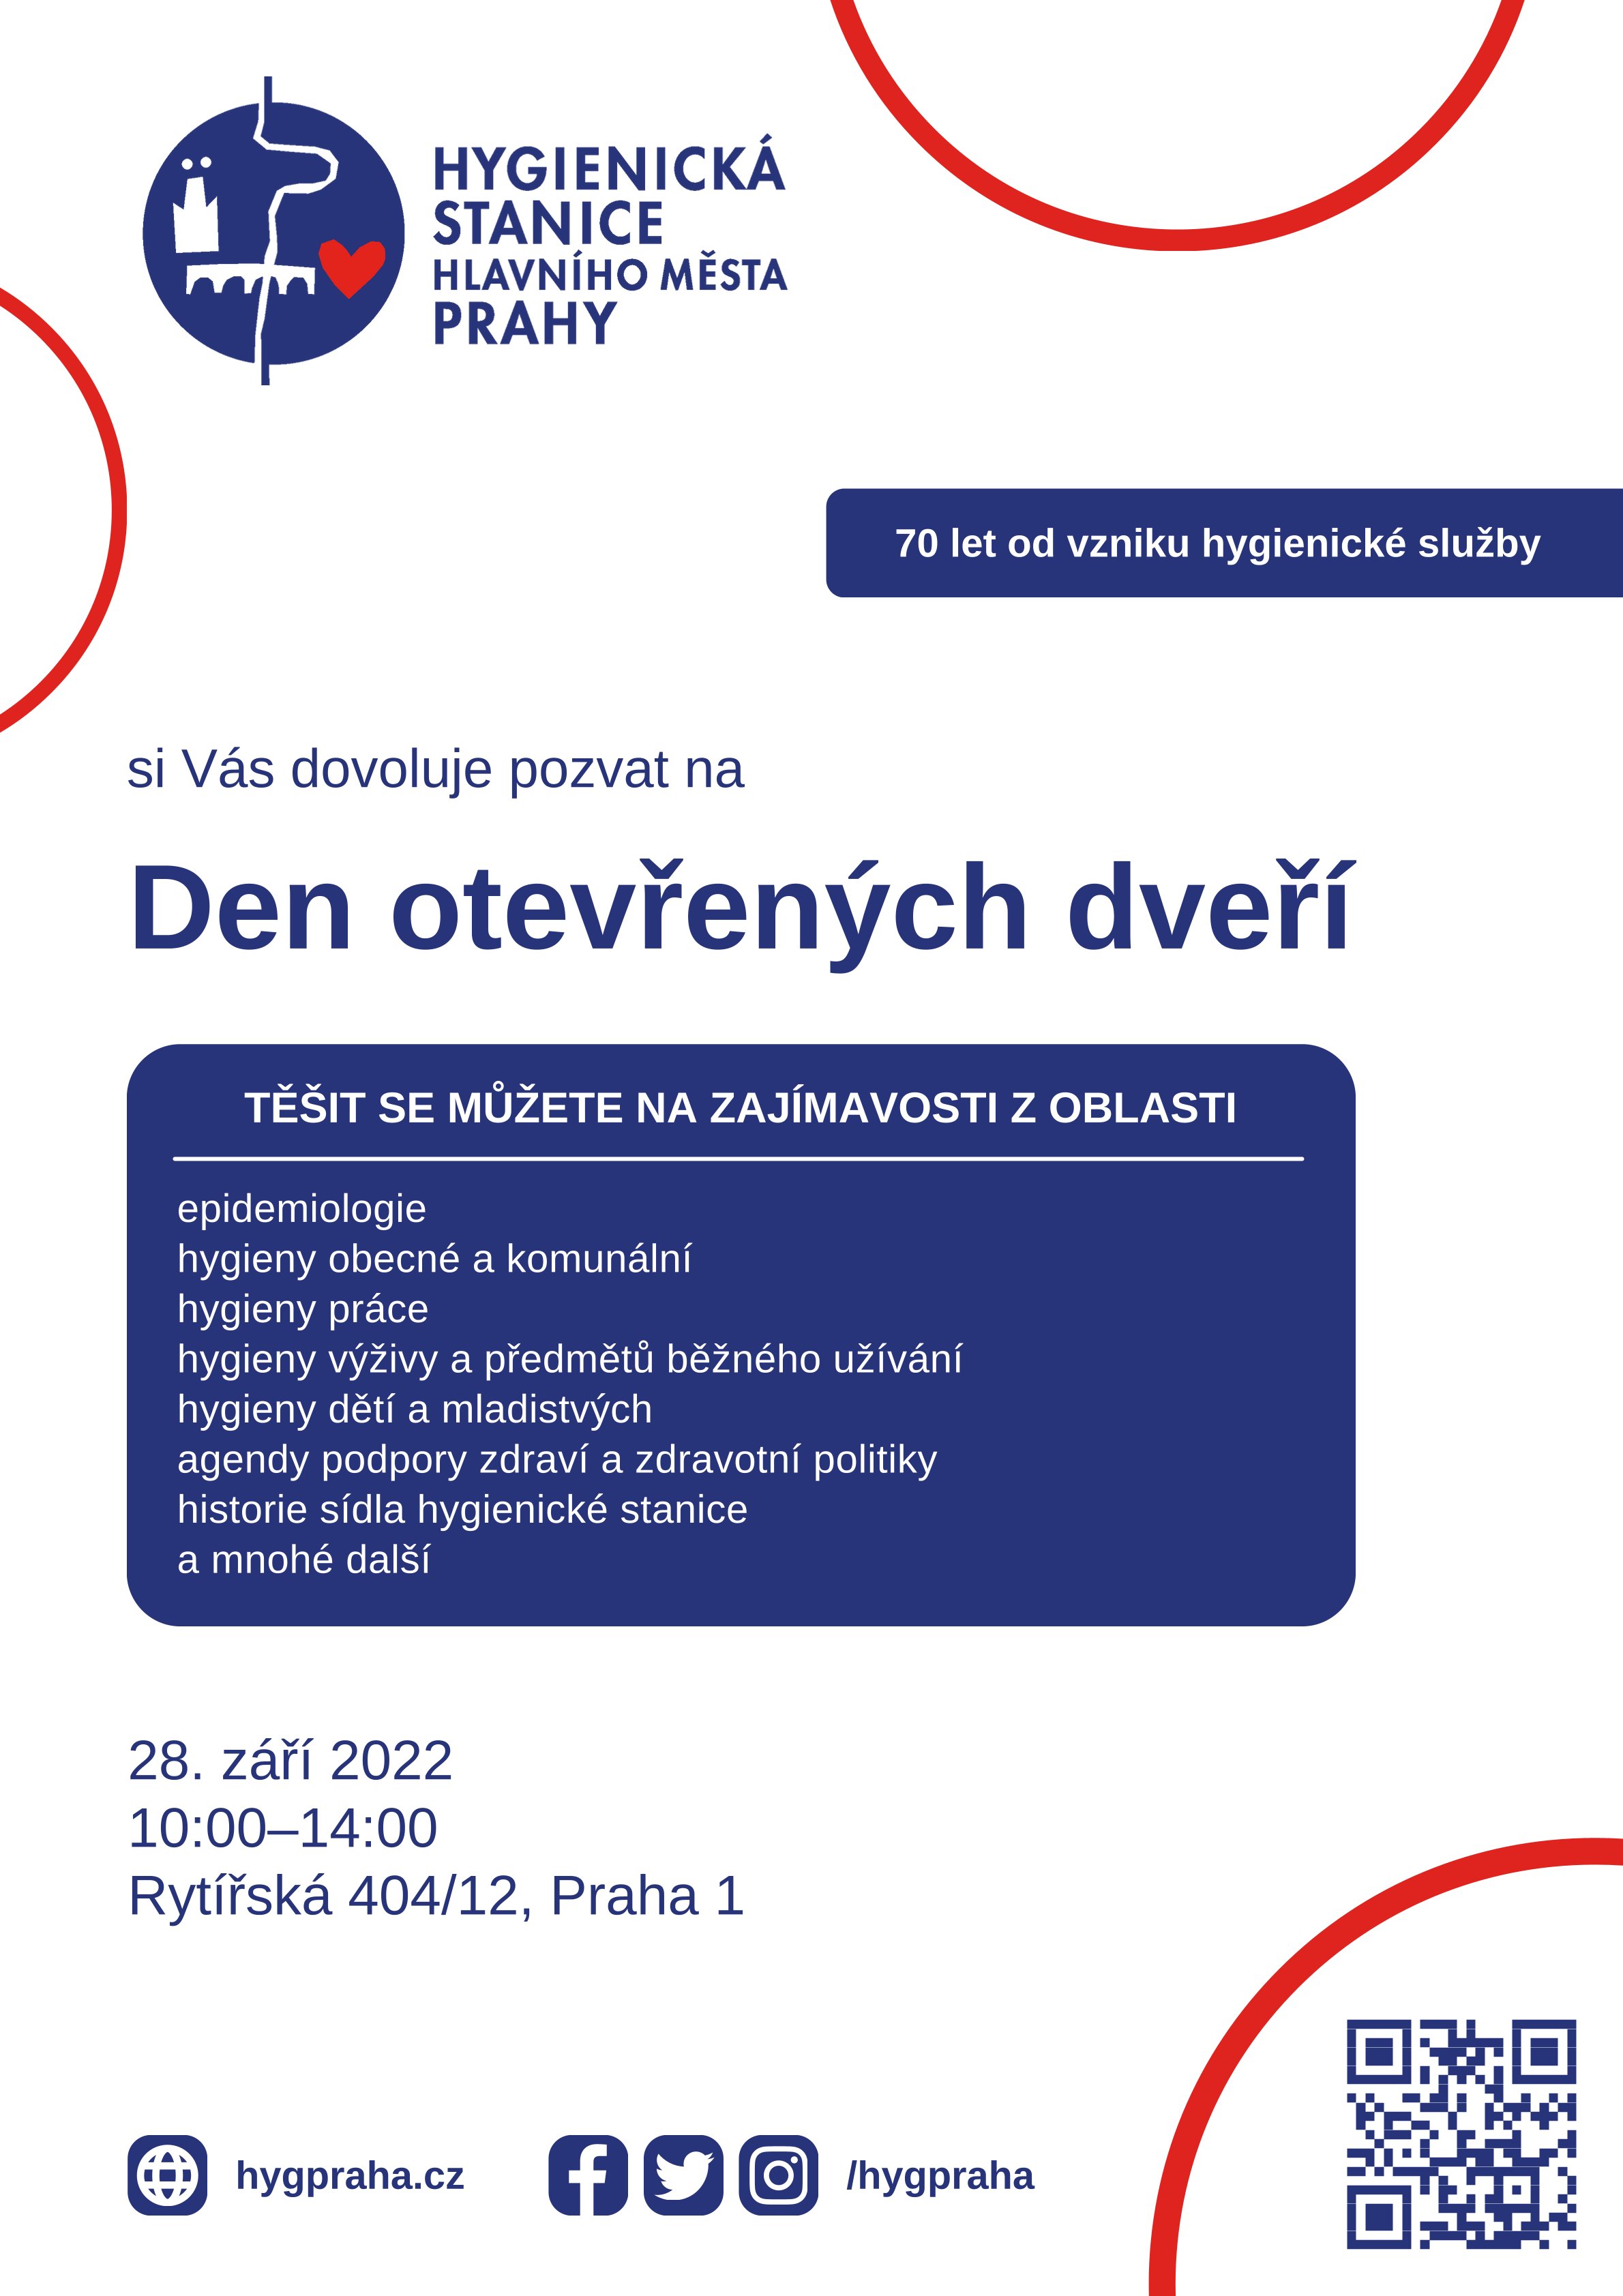 Den otevřených dveří pražské hygienické stanice